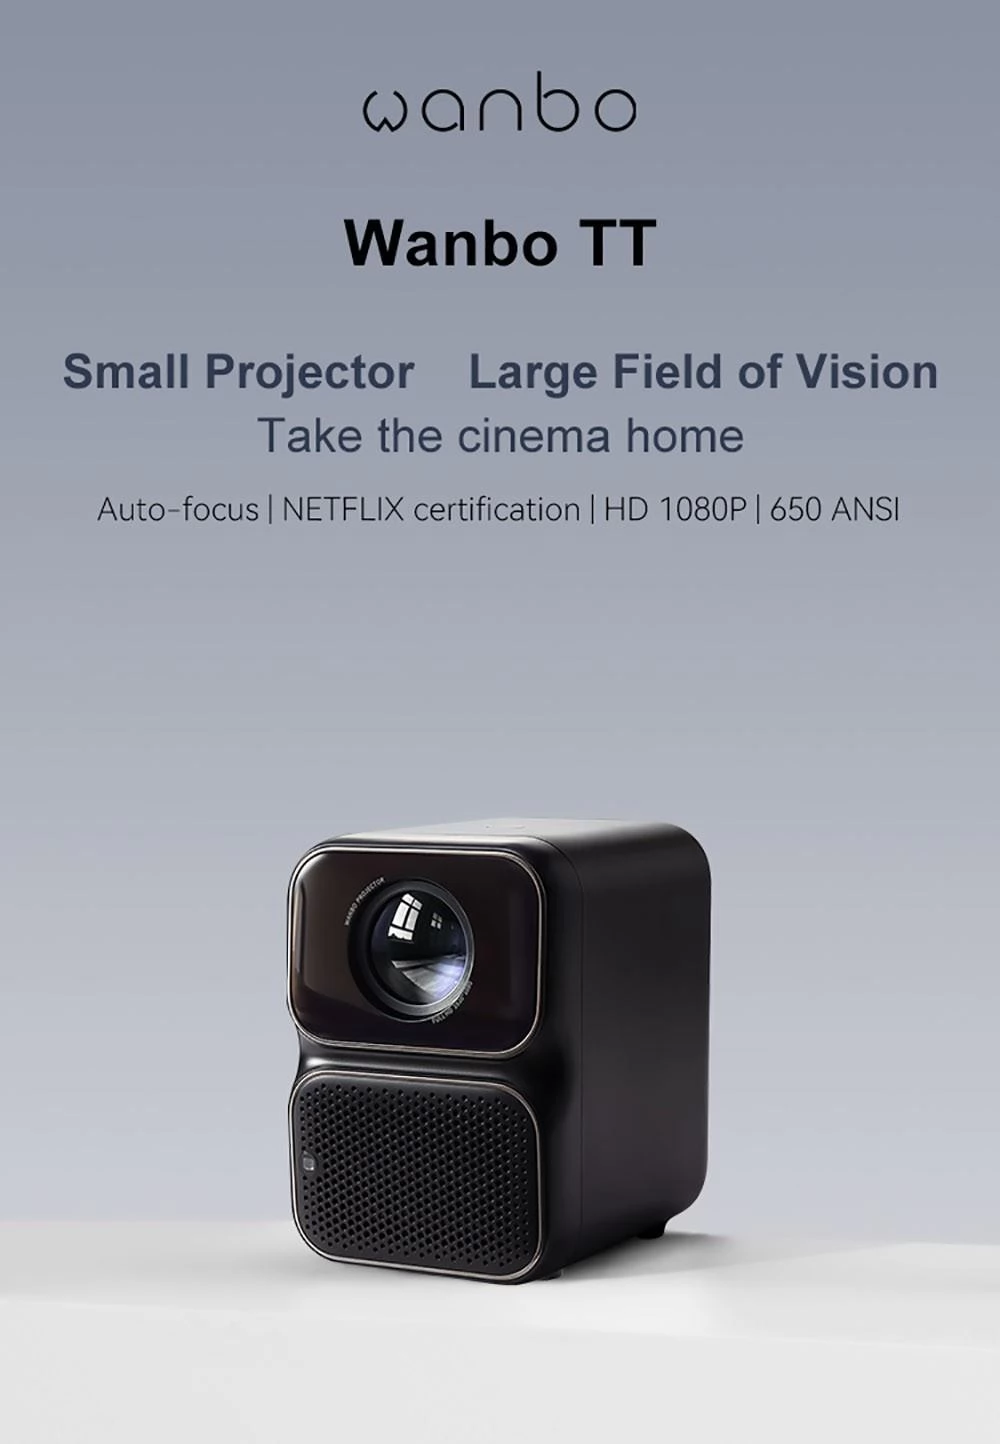 Wanbo TT LCD Projektor, Autofokus, 1080P HDR, 650 ANSI, 2.4G, 1920*1080 Physikalische Auflösung, Geräuscharm